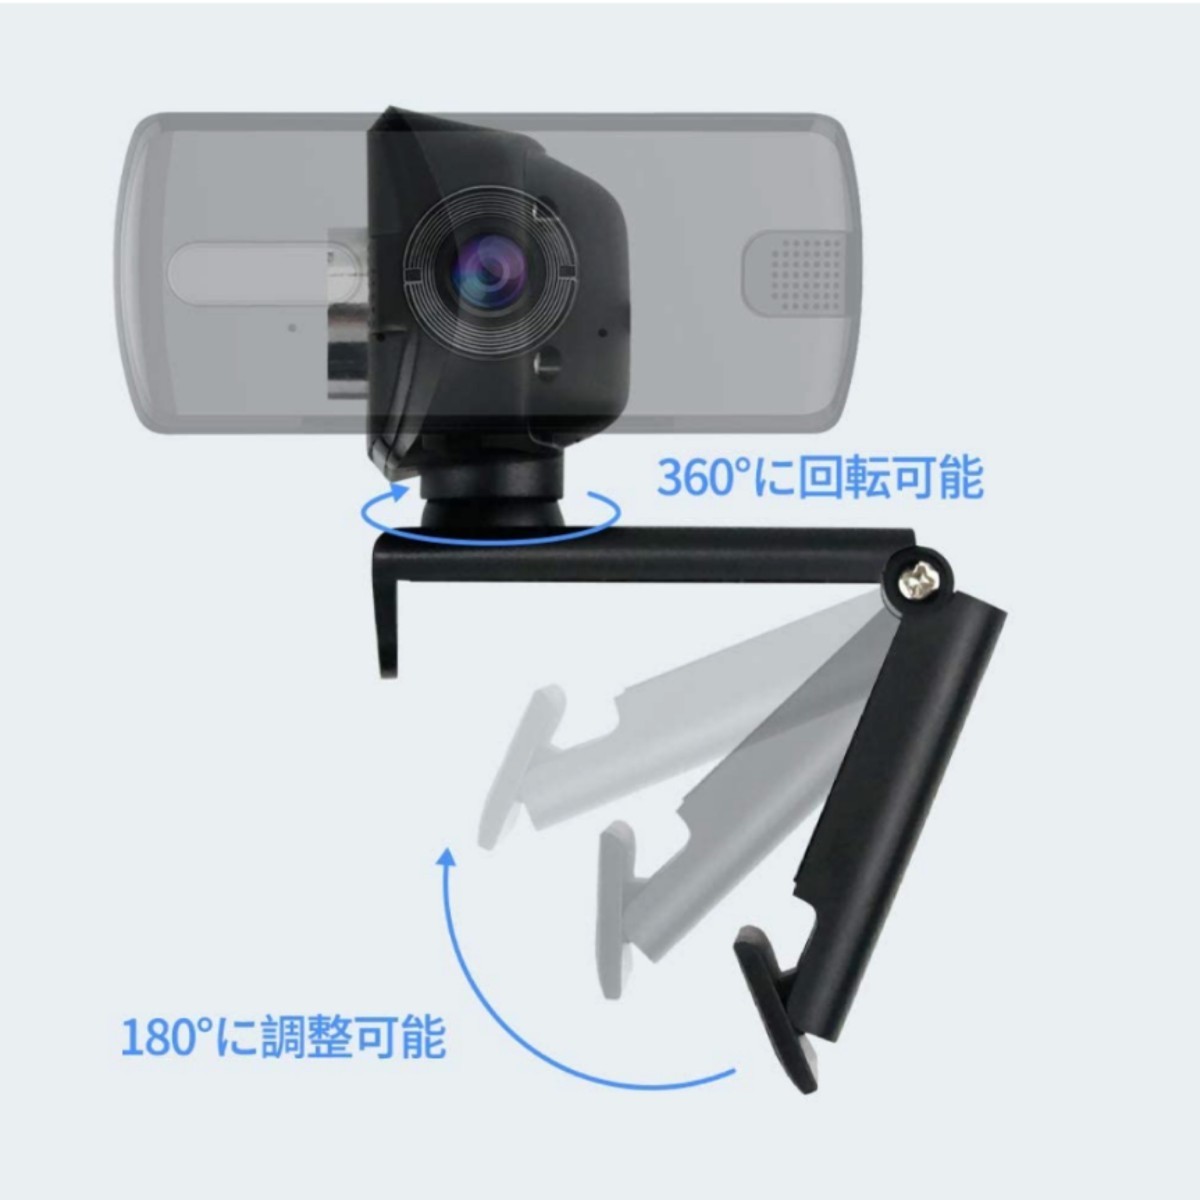 ウェブカメラ 300万画素 フルHD 110°広角 内蔵マイク付 USB電源